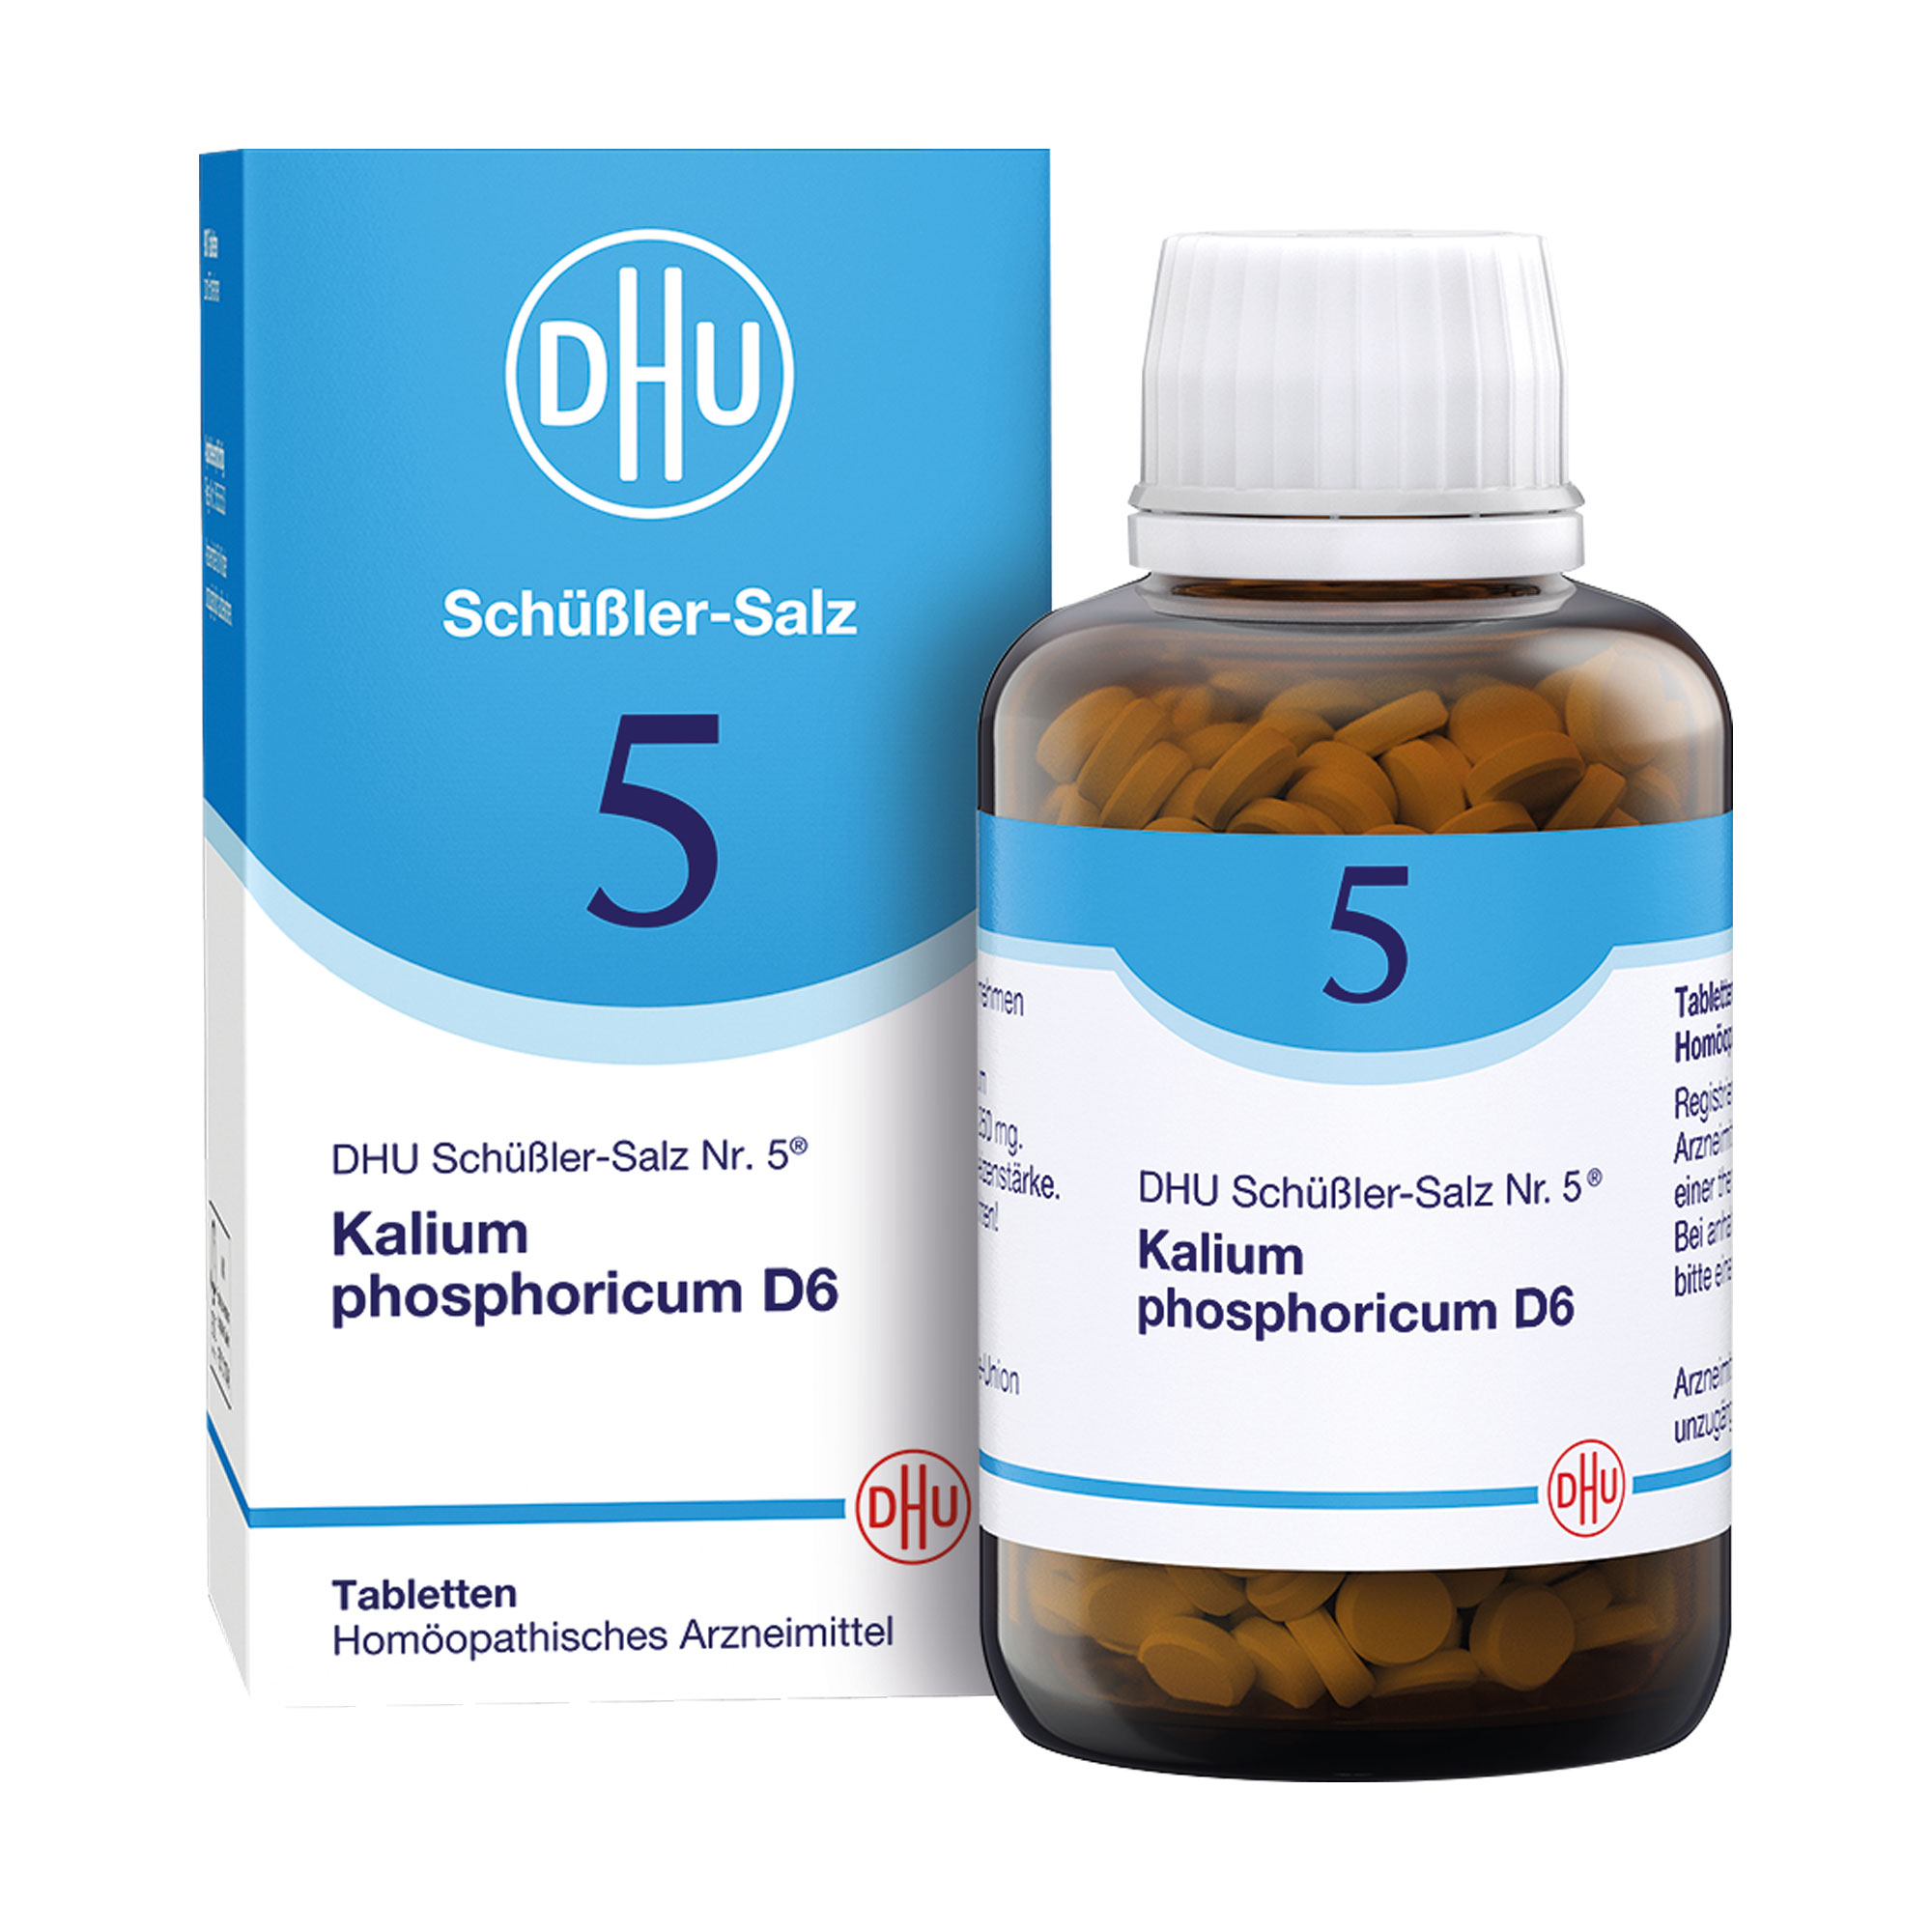 Homöopathisches Arzneimittel mit Kalium phosphoricum Trit. D6.